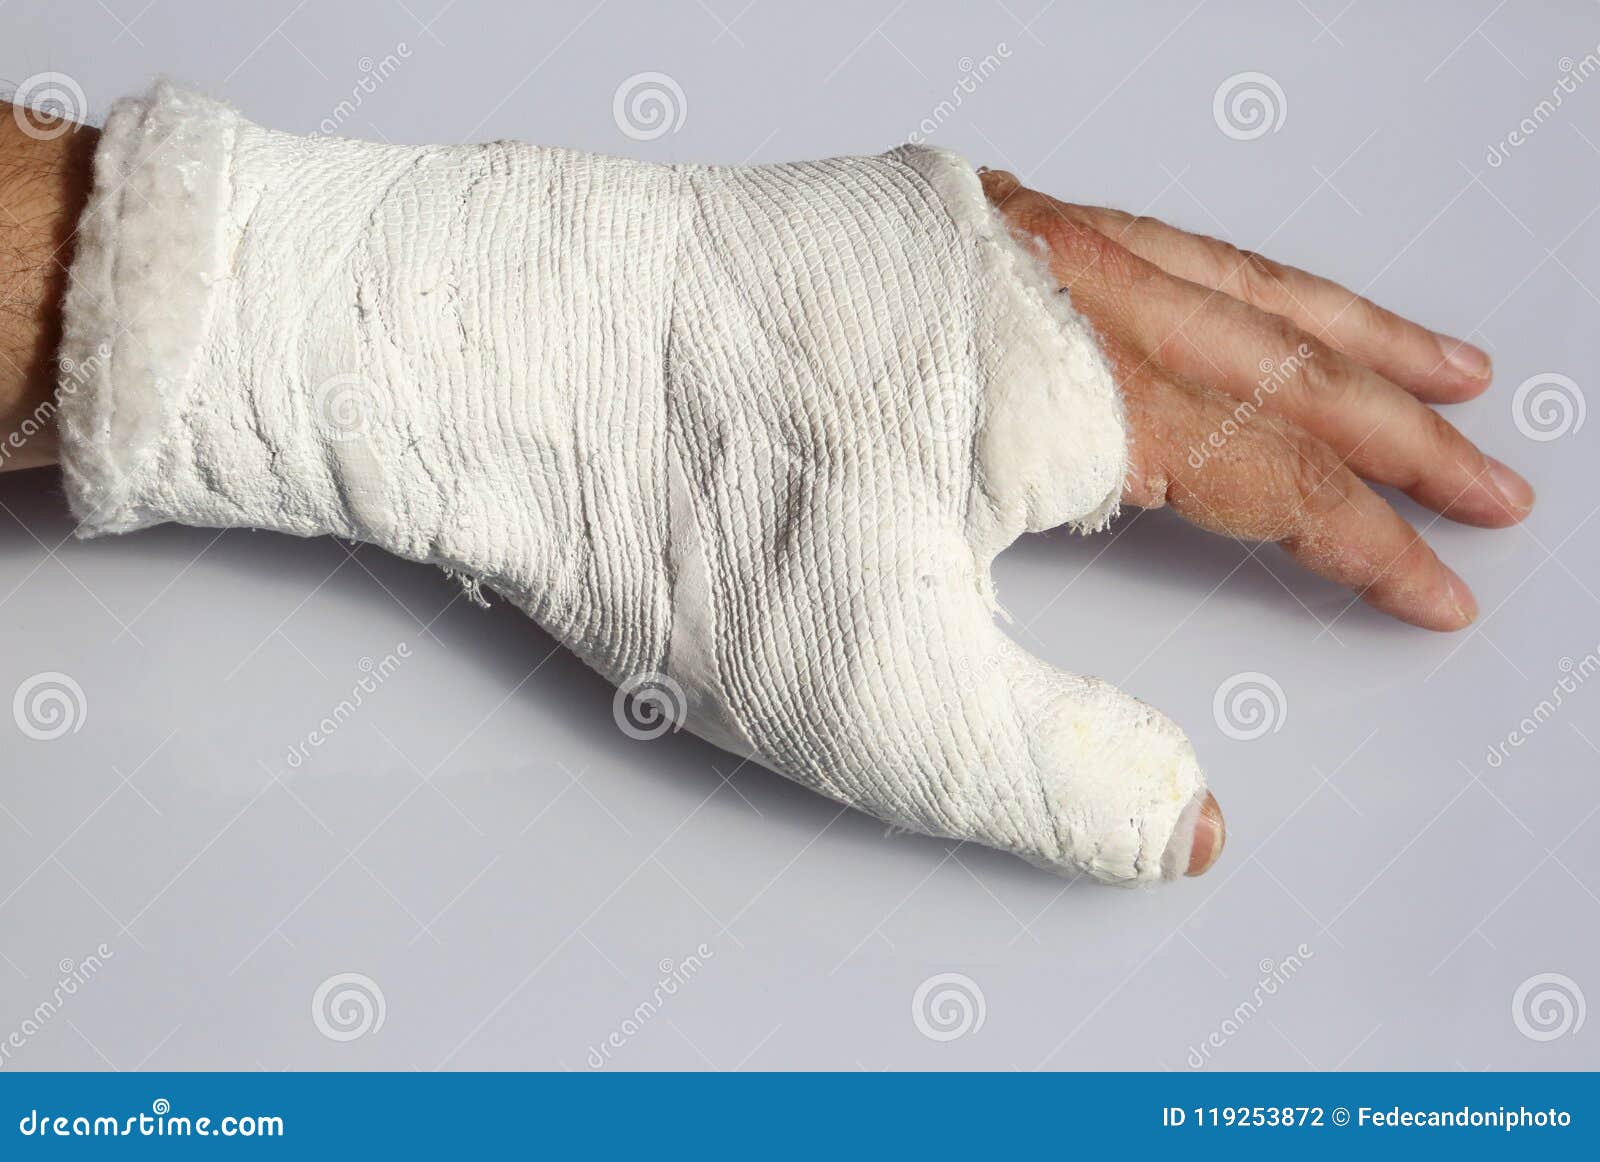 Трещина накладывают гипс. Гипс при переломе большого пальца руки.